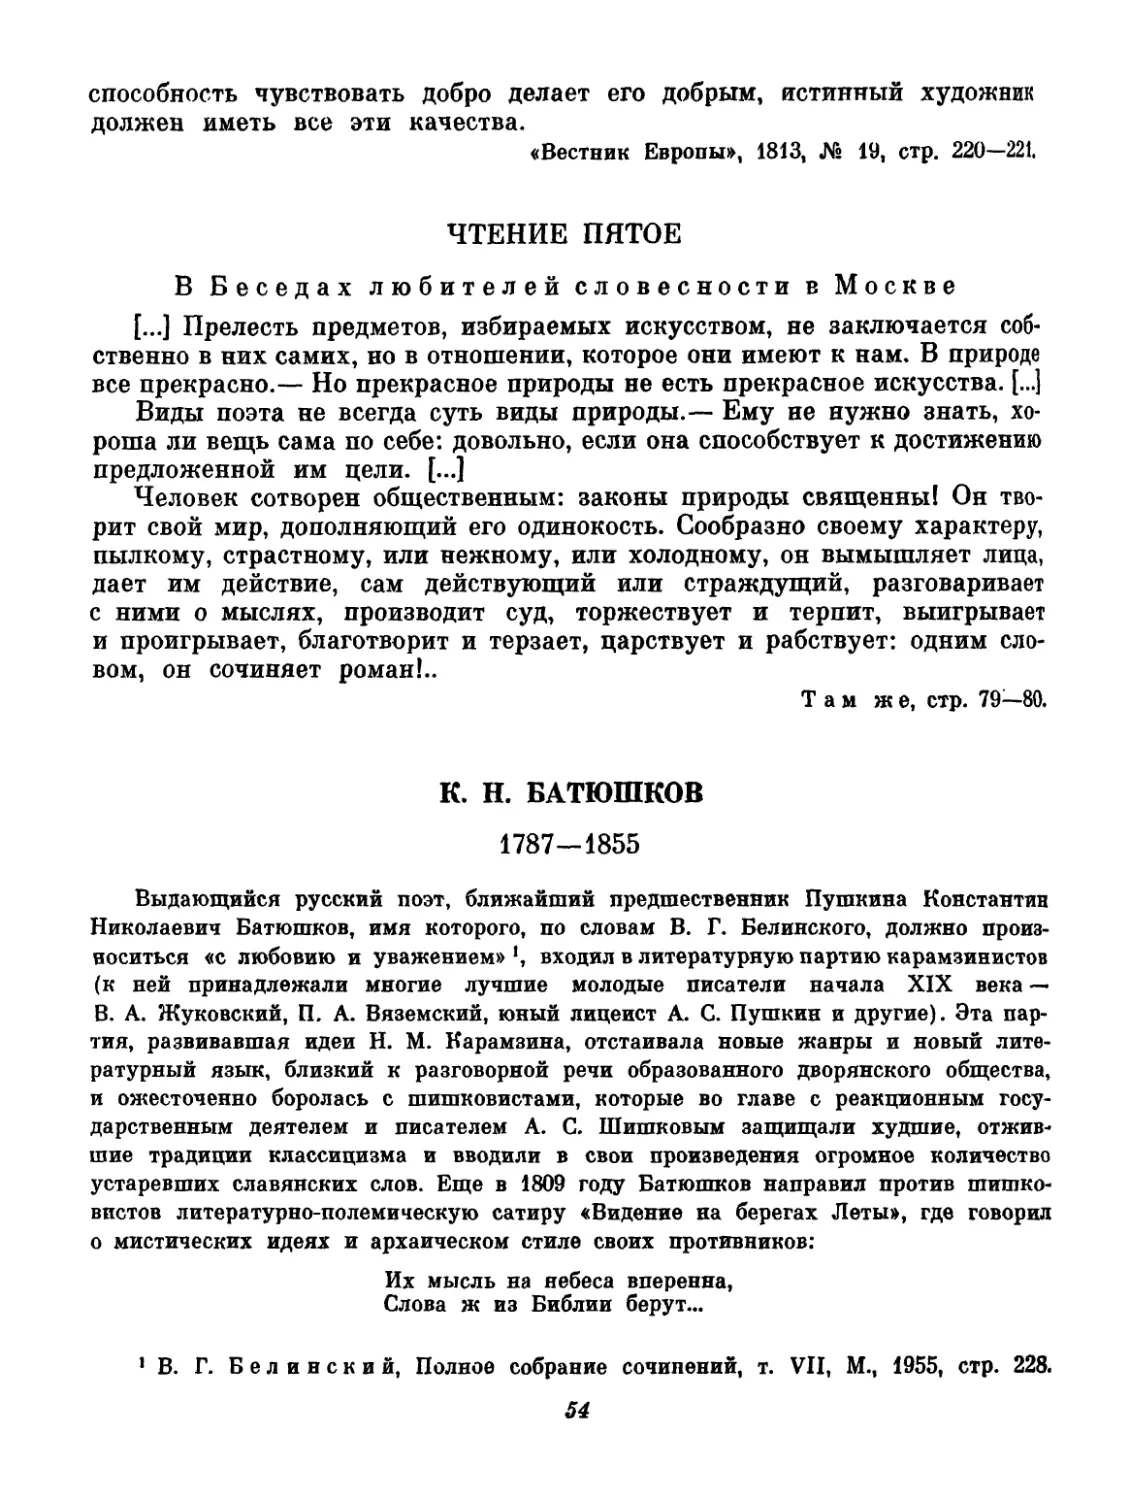 Батюшков. Вступительный текст и составление Н. В. Фридмана